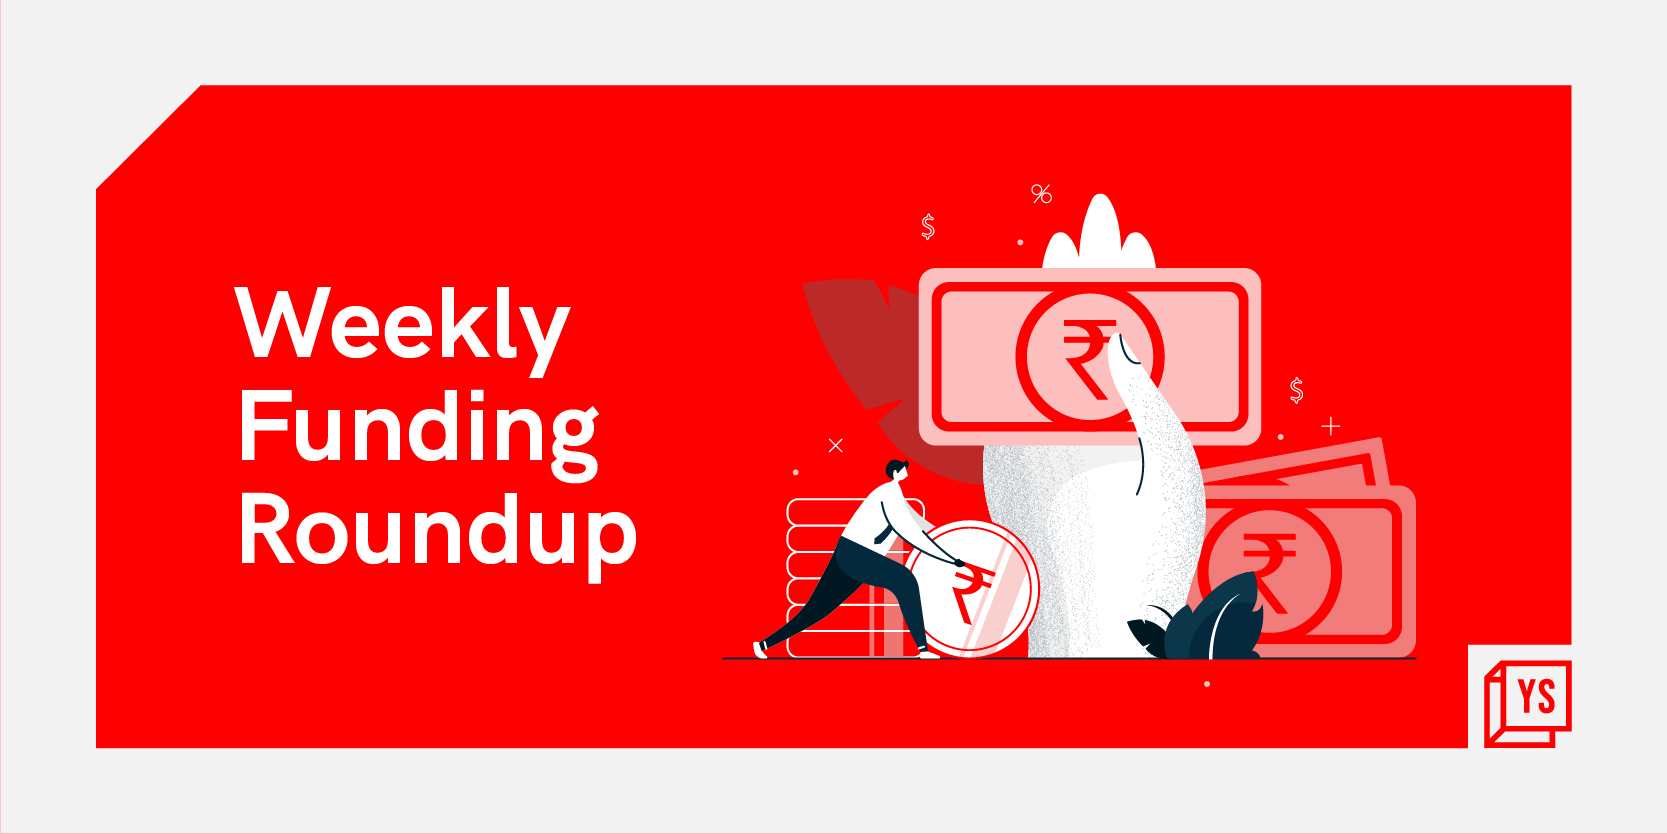 [Weekly funding roundup August 1-5] No major uptick in venture capital inflow